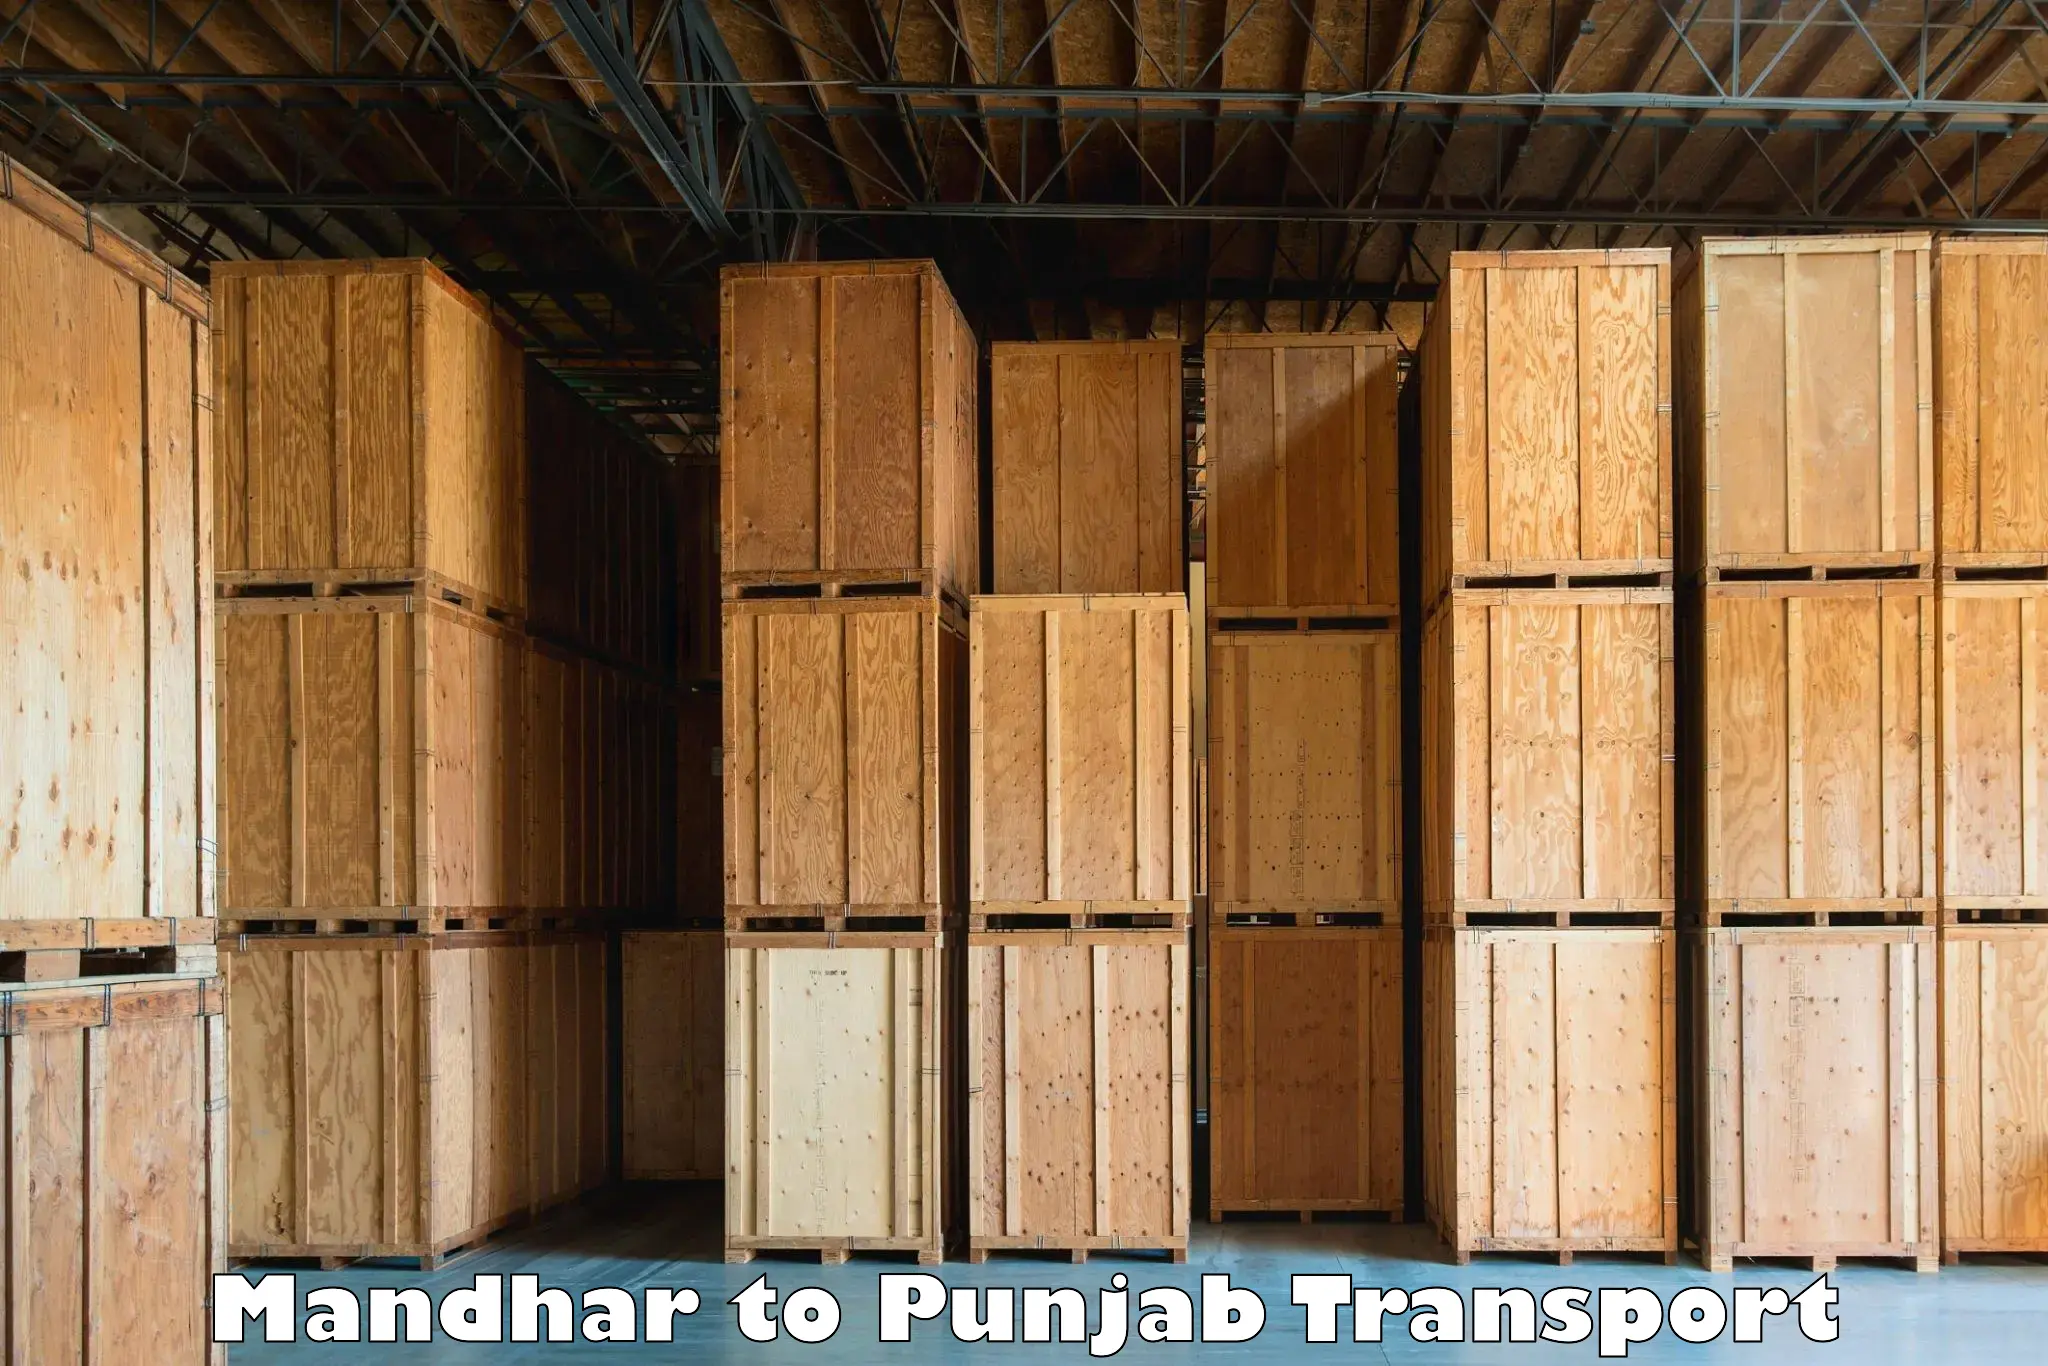 Daily parcel service transport Mandhar to Ropar